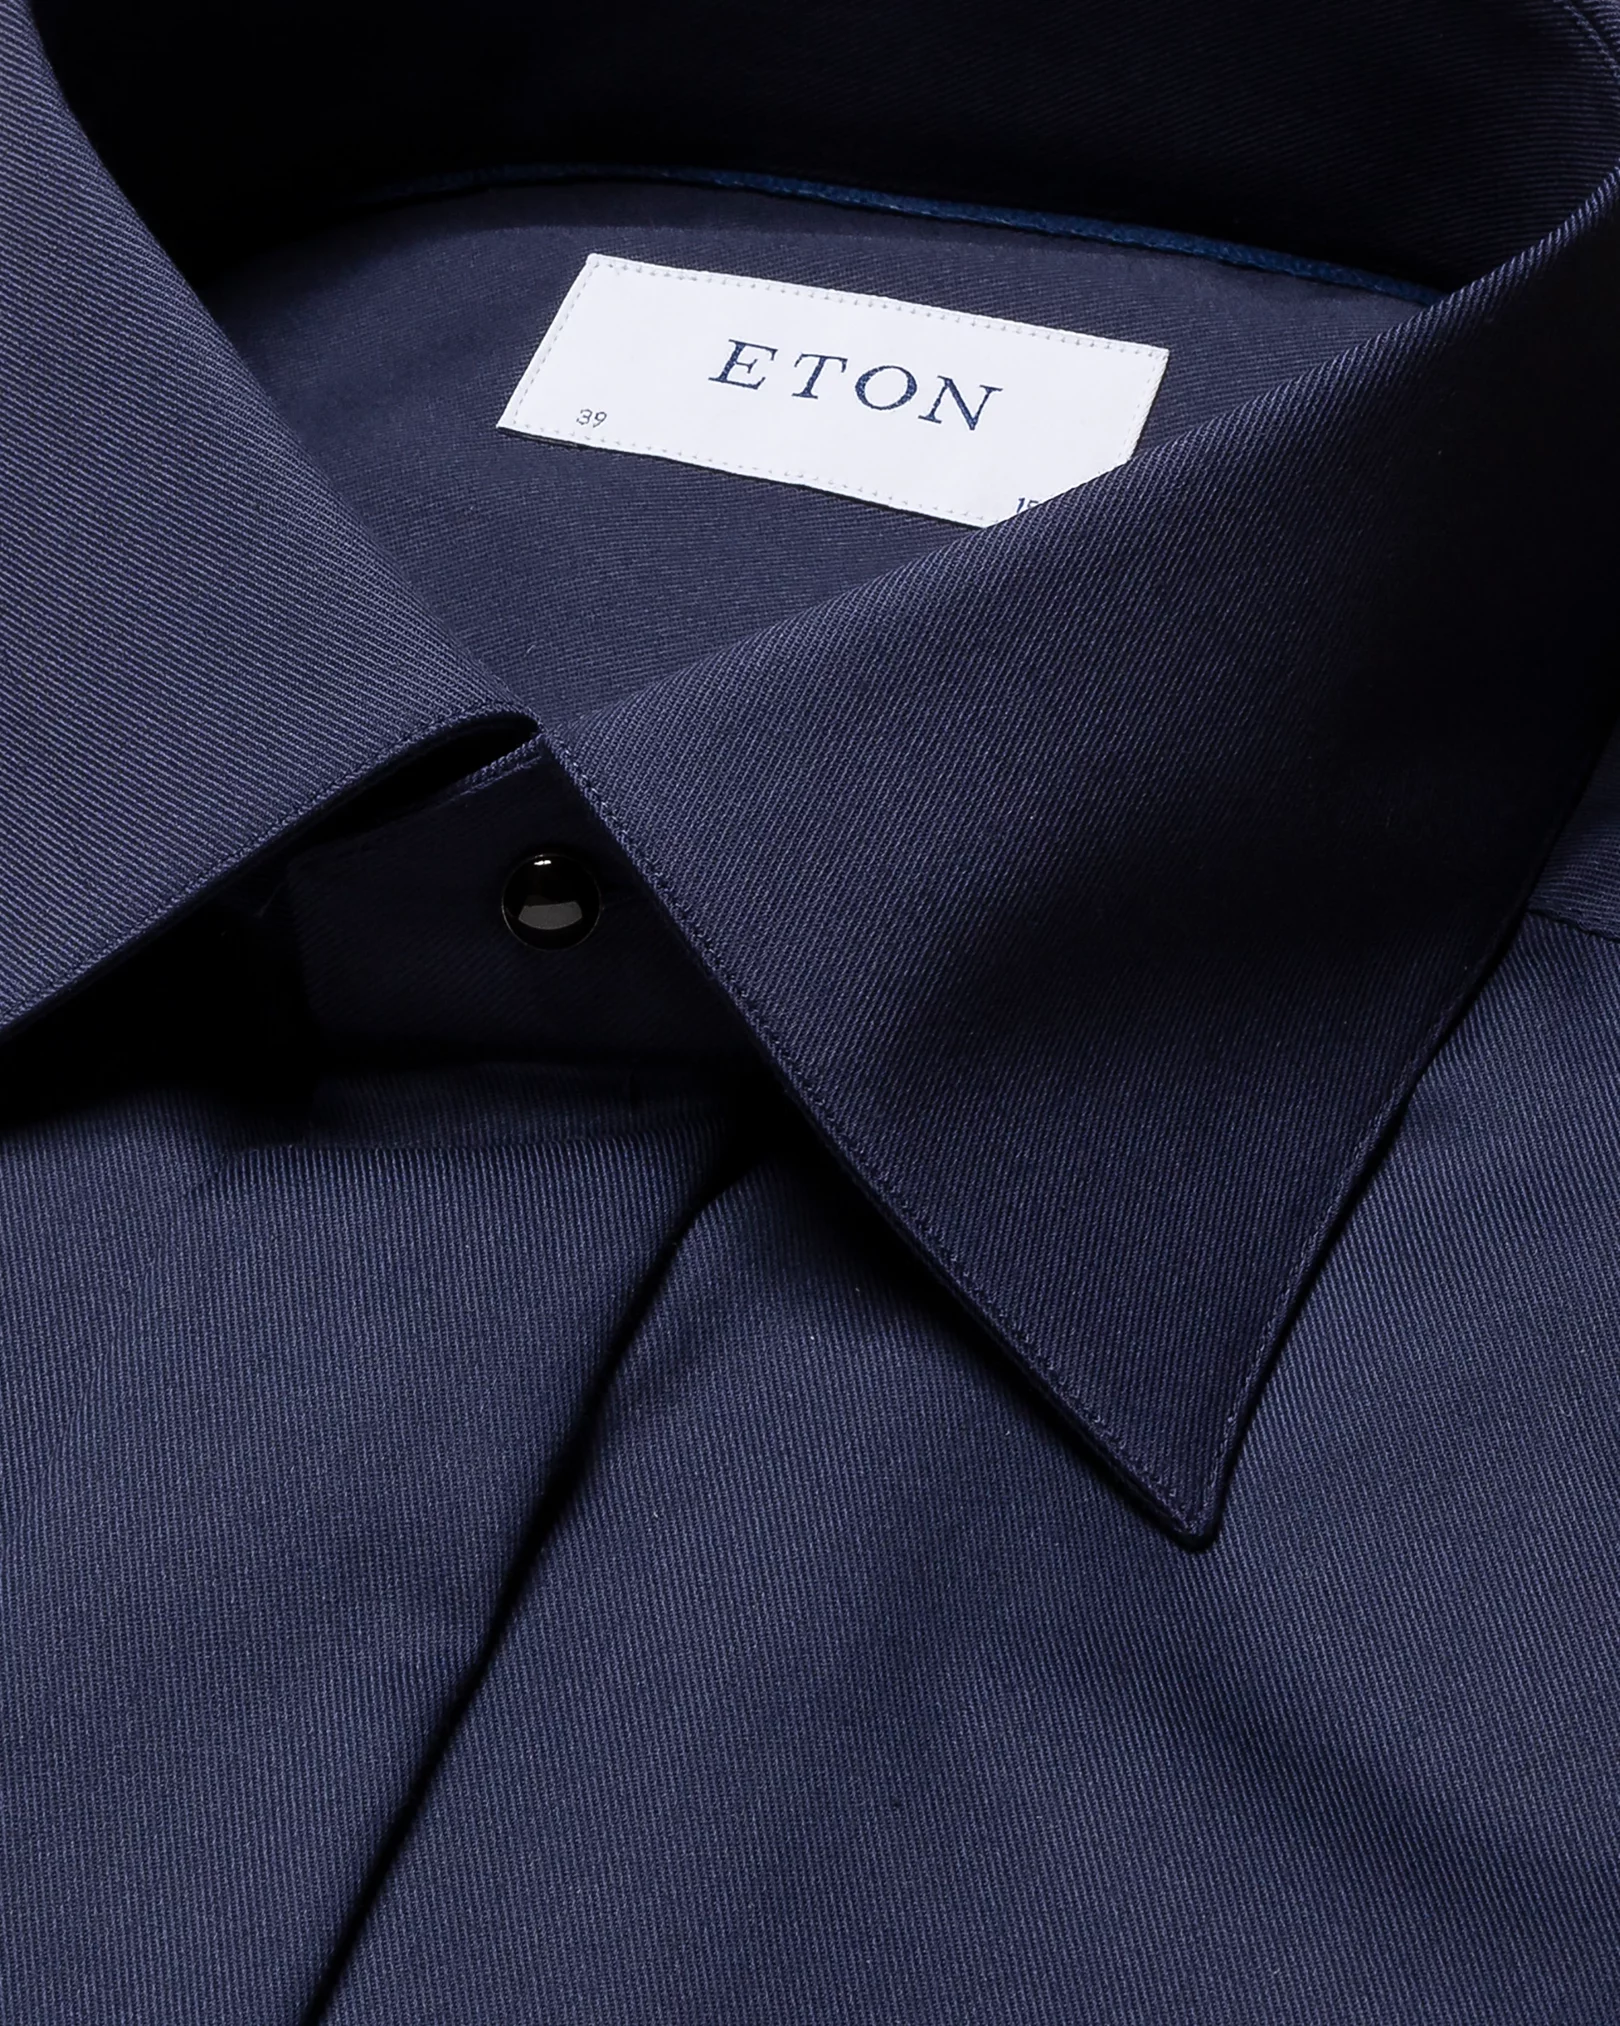 Eton - navy blue twill stretch